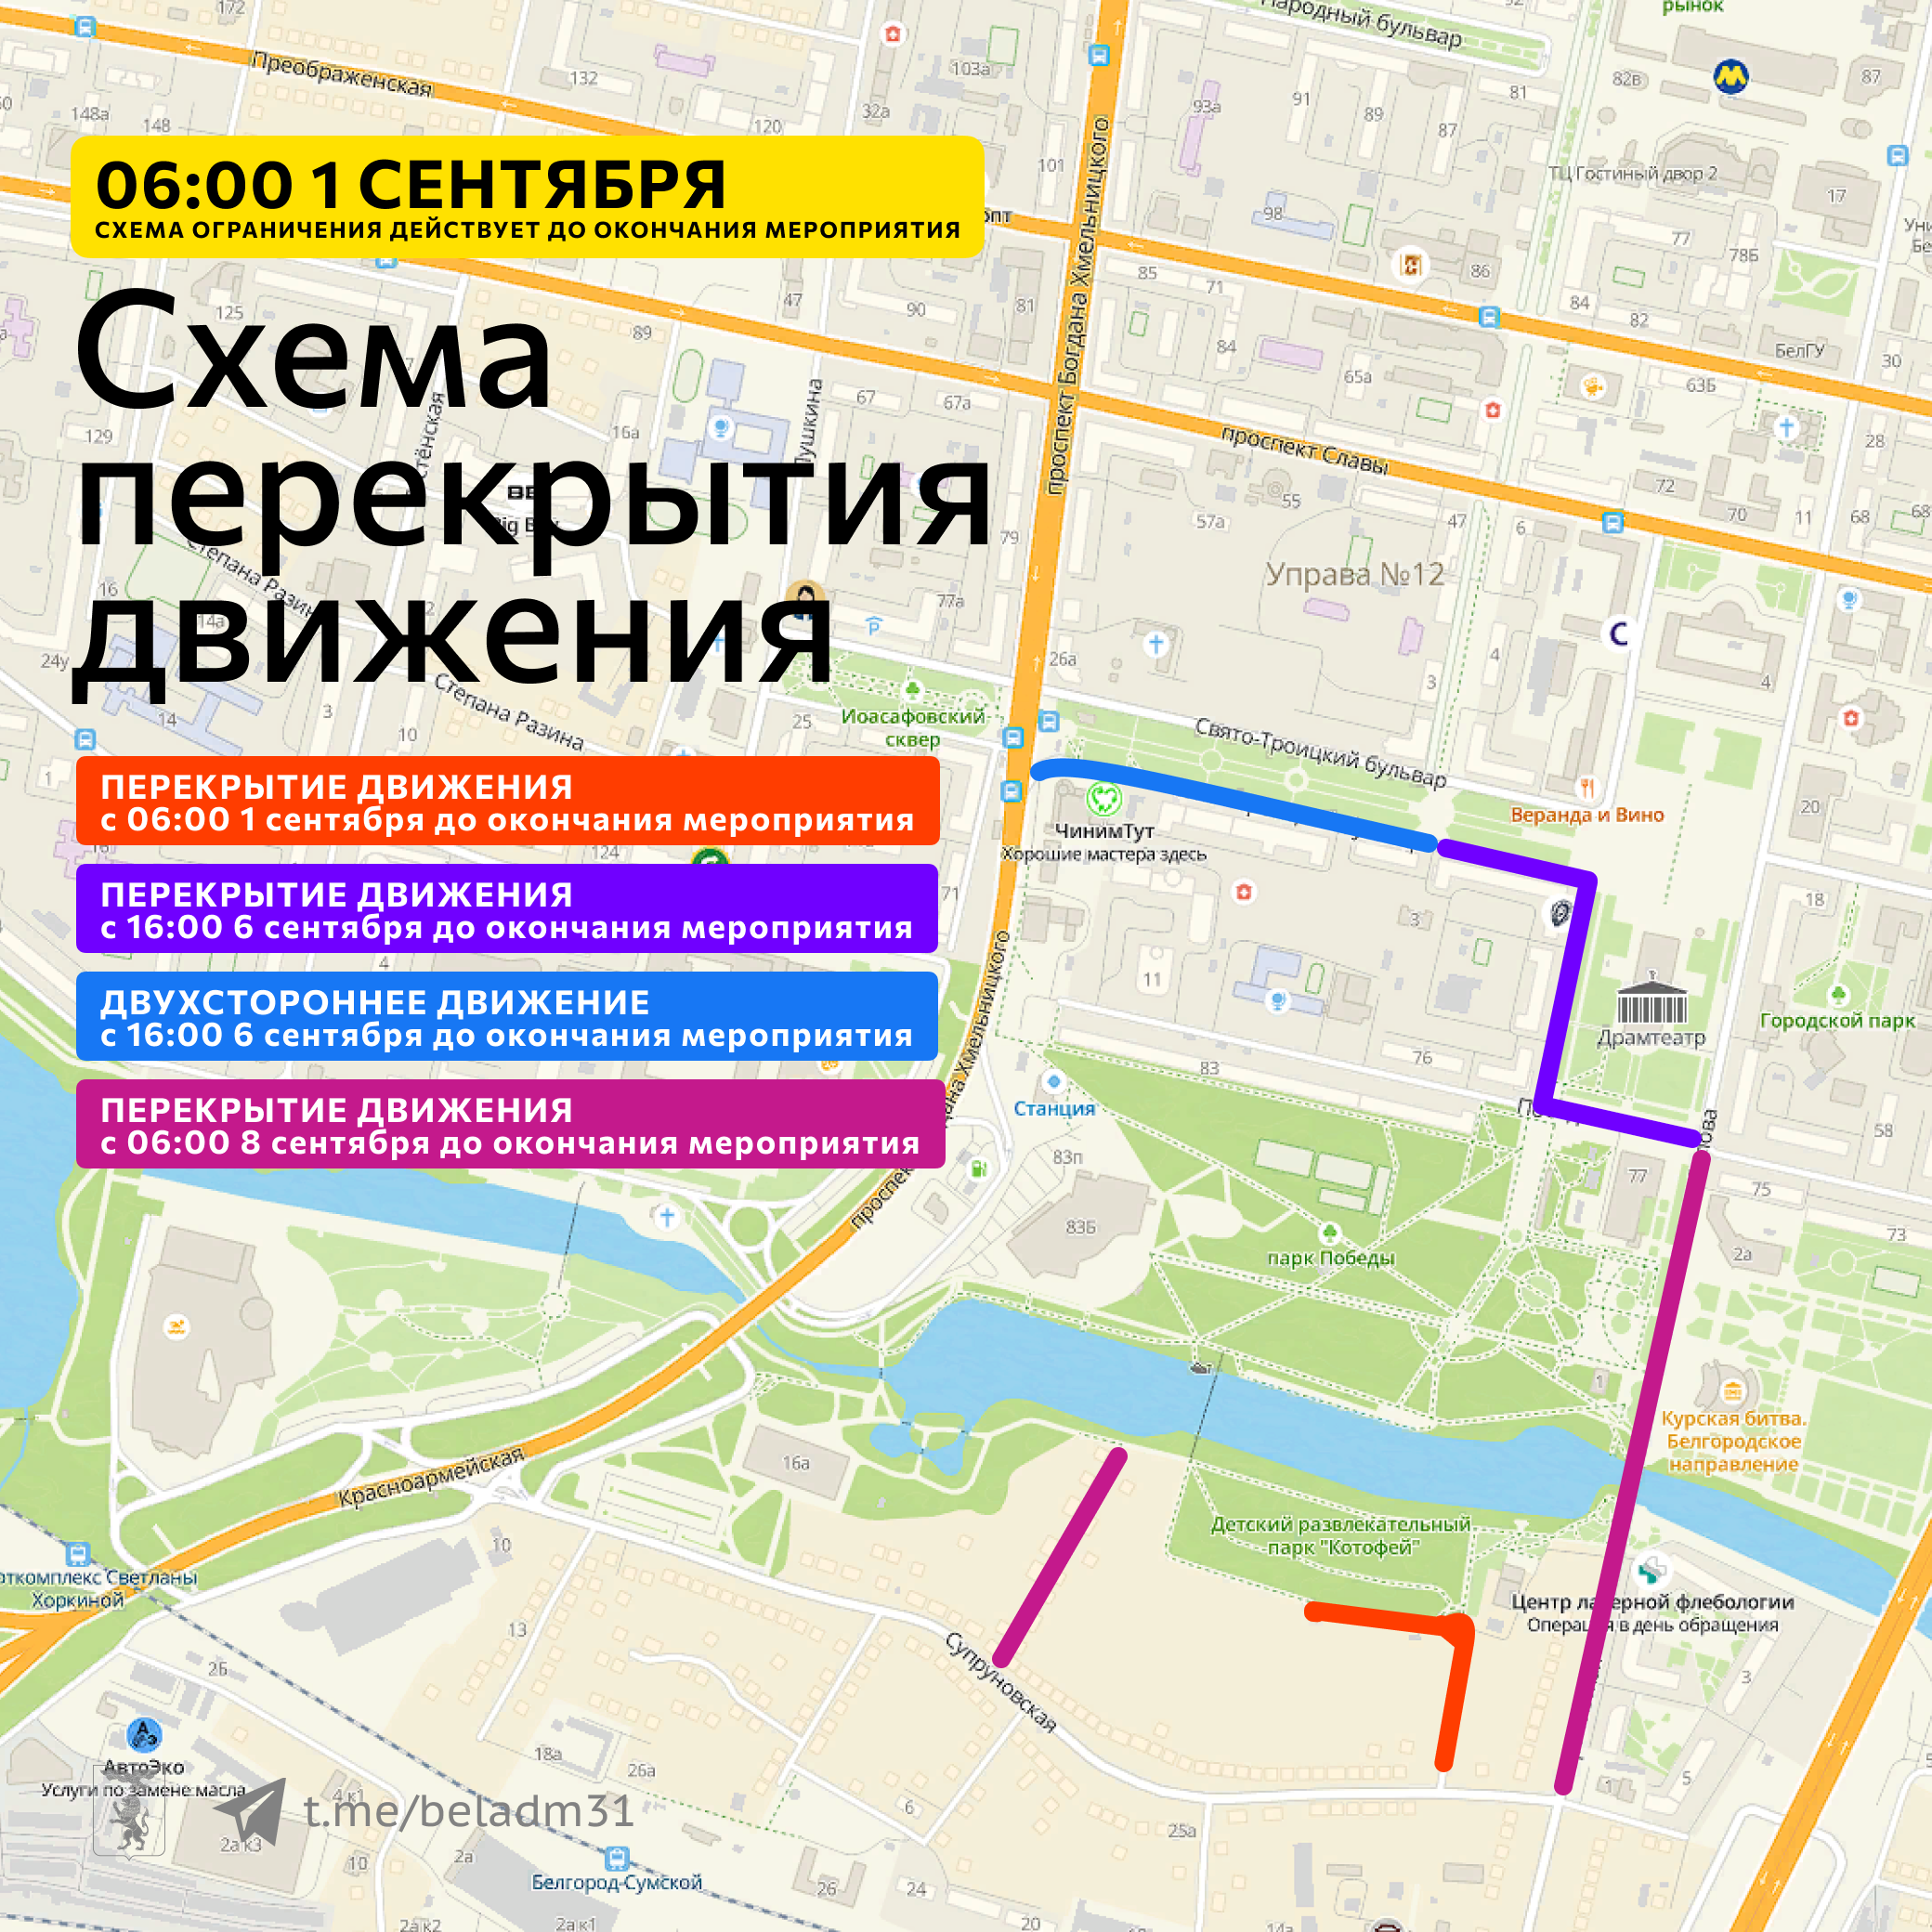 Сегодня с 16:00 в Белгороде будет перекрыто движение на Театральном проезде и изменена схема движения на Свято-Троицком бульваре.